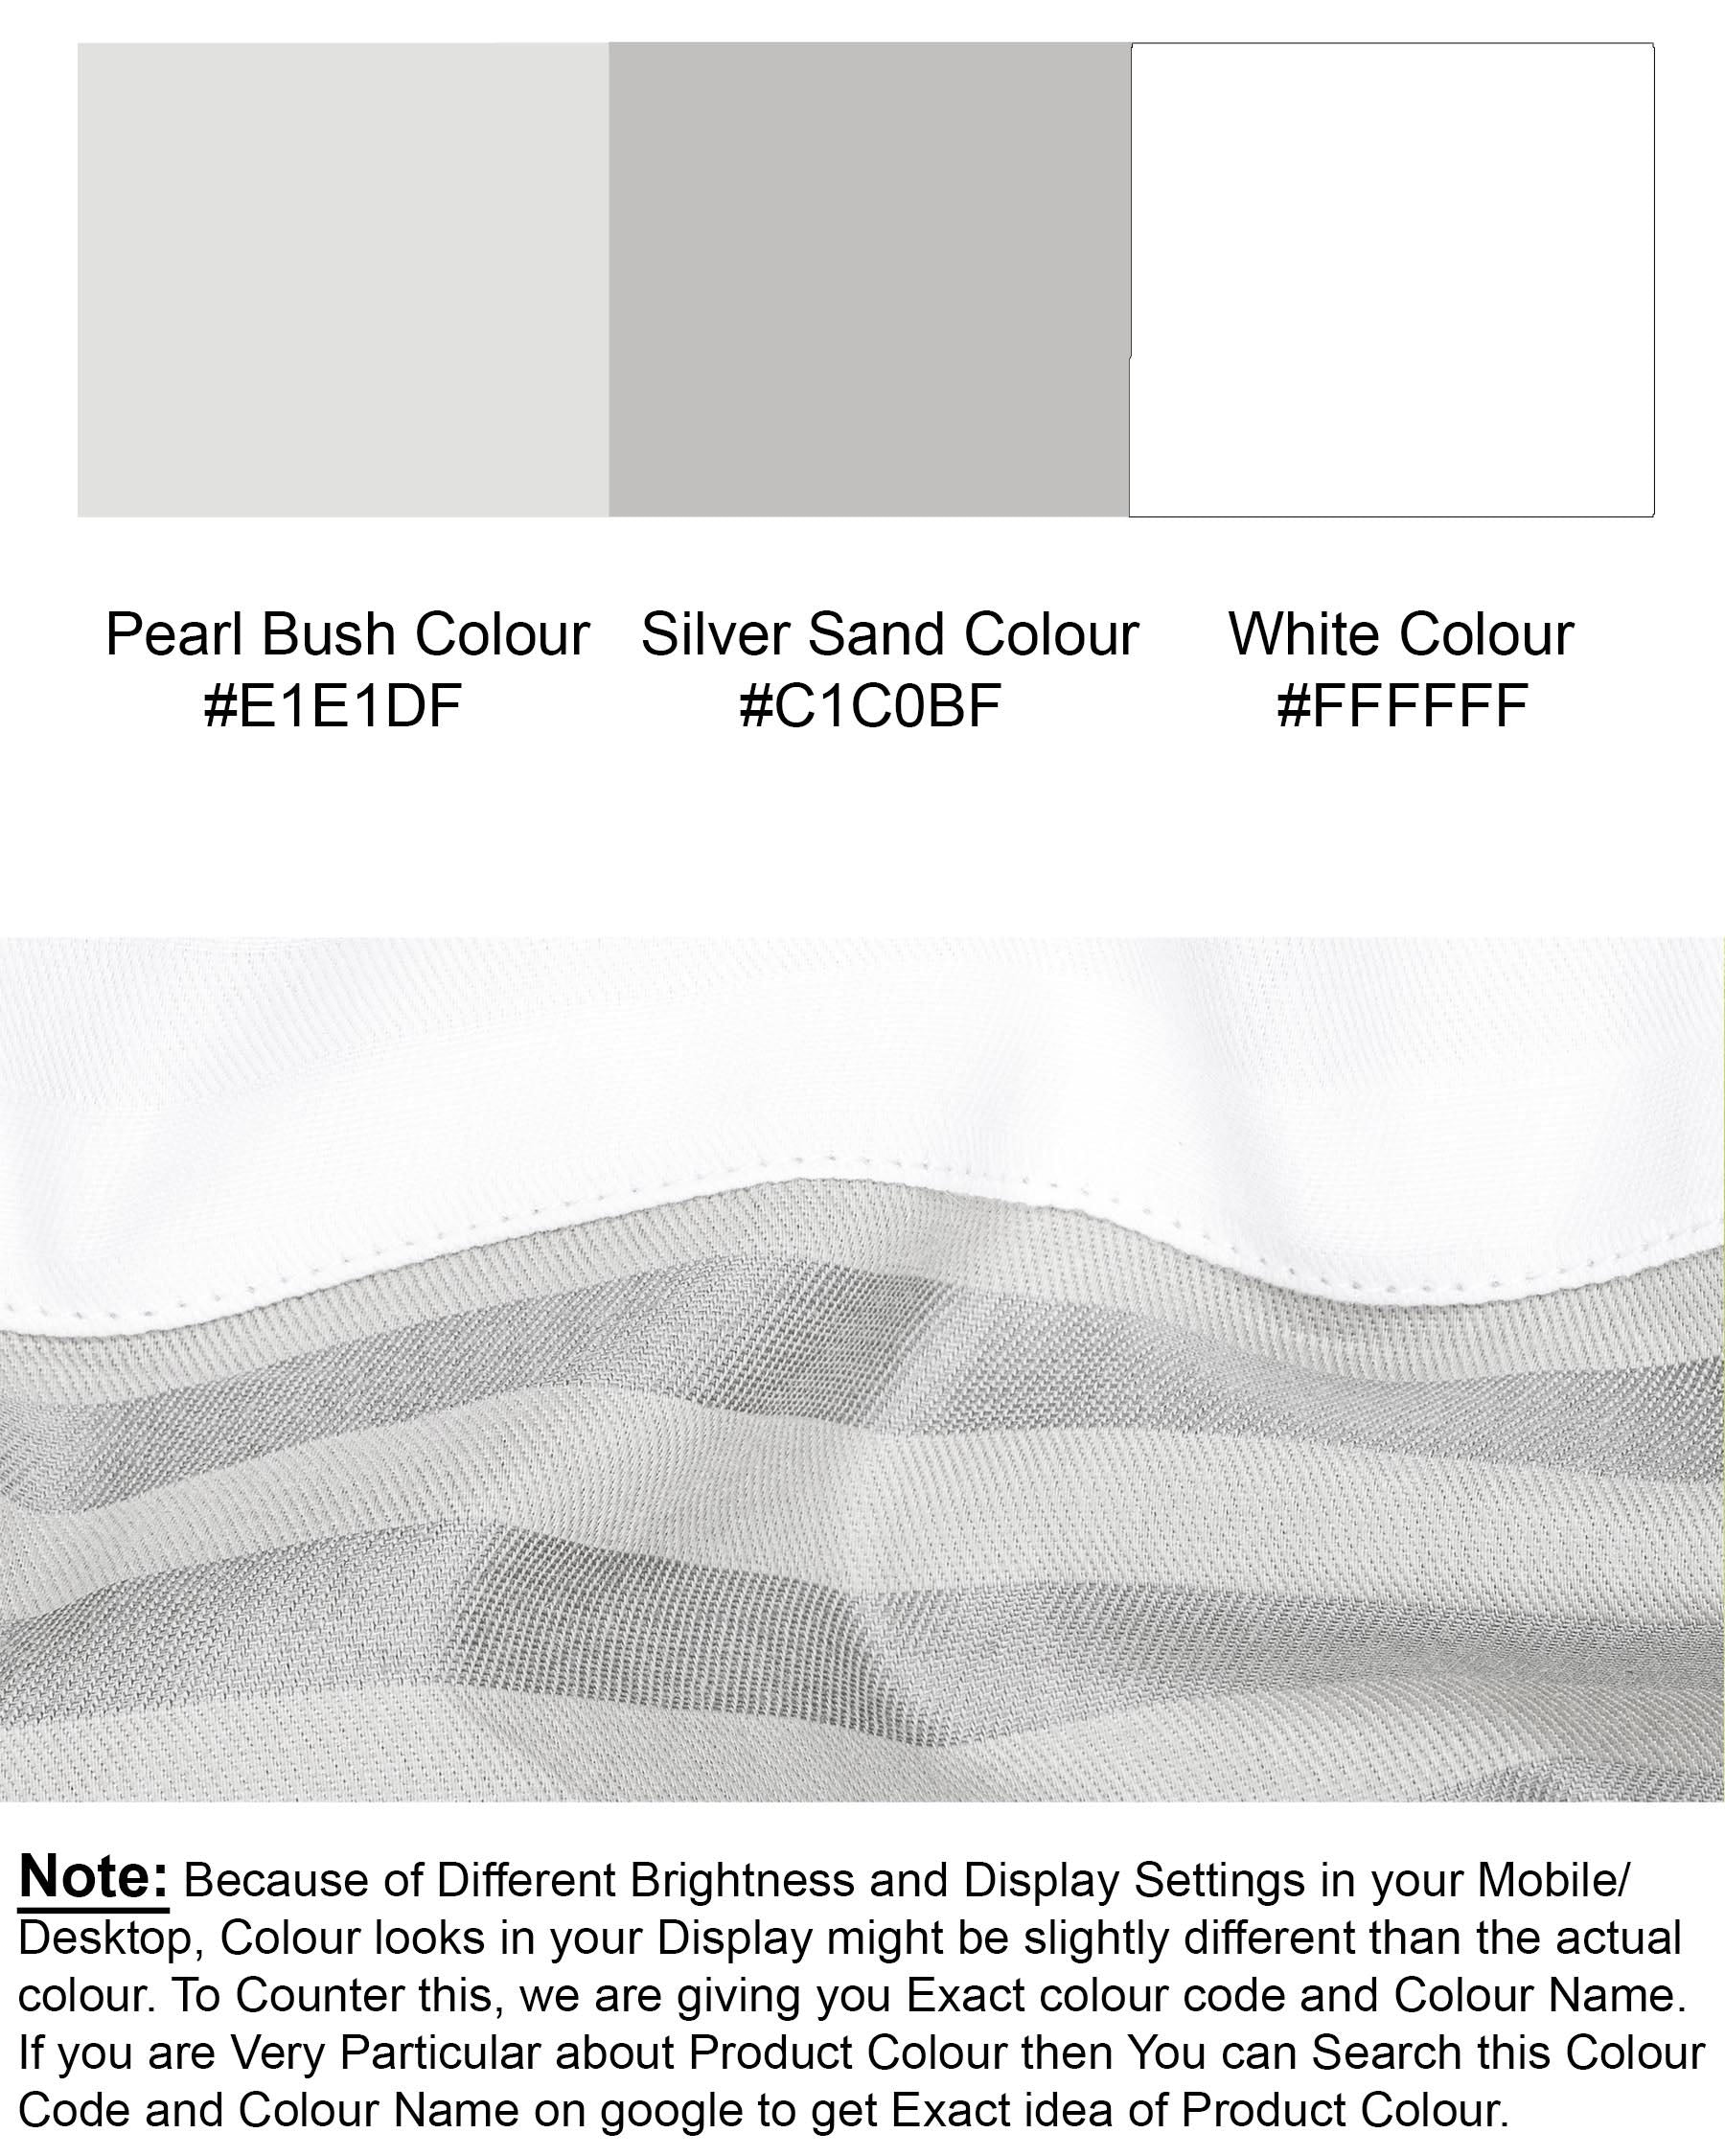 Half White and Half Grey Striped Twill Premium Cotton Designer Shirt  6744-P140-38,6744-P140-38,6744-P140-39,6744-P140-39,6744-P140-40,6744-P140-40,6744-P140-42,6744-P140-42,6744-P140-44,6744-P140-44,6744-P140-46,6744-P140-46,6744-P140-48,6744-P140-48,6744-P140-50,6744-P140-50,6744-P140-52,6744-P140-52